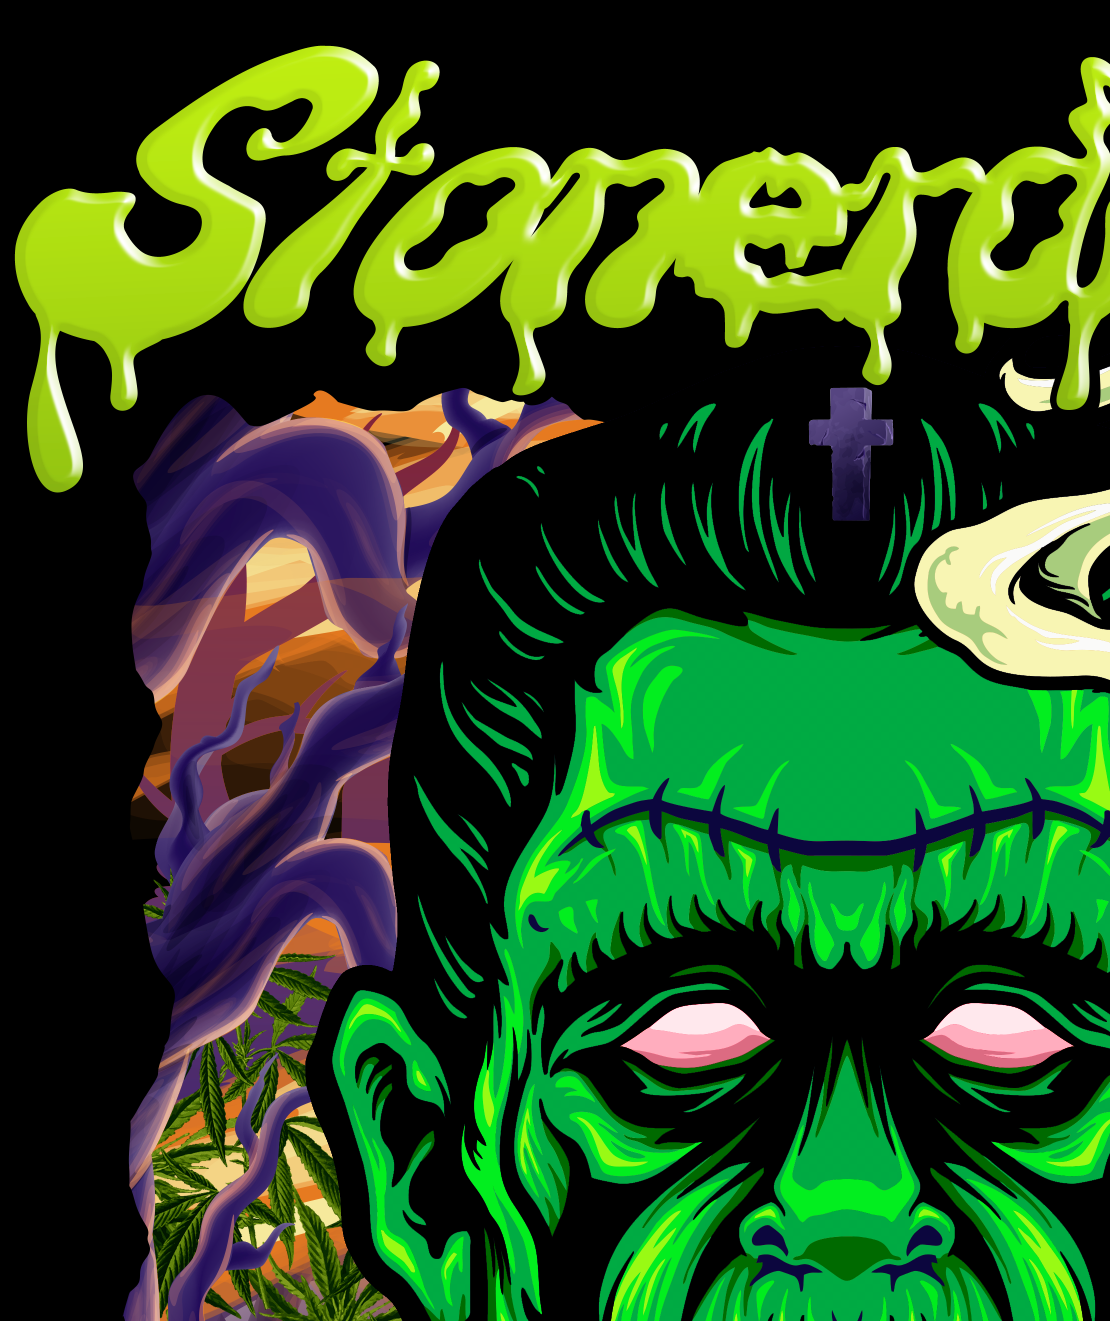 StonerDays Dankenstein Hoodie with vibrant green Frankenstein design on black background